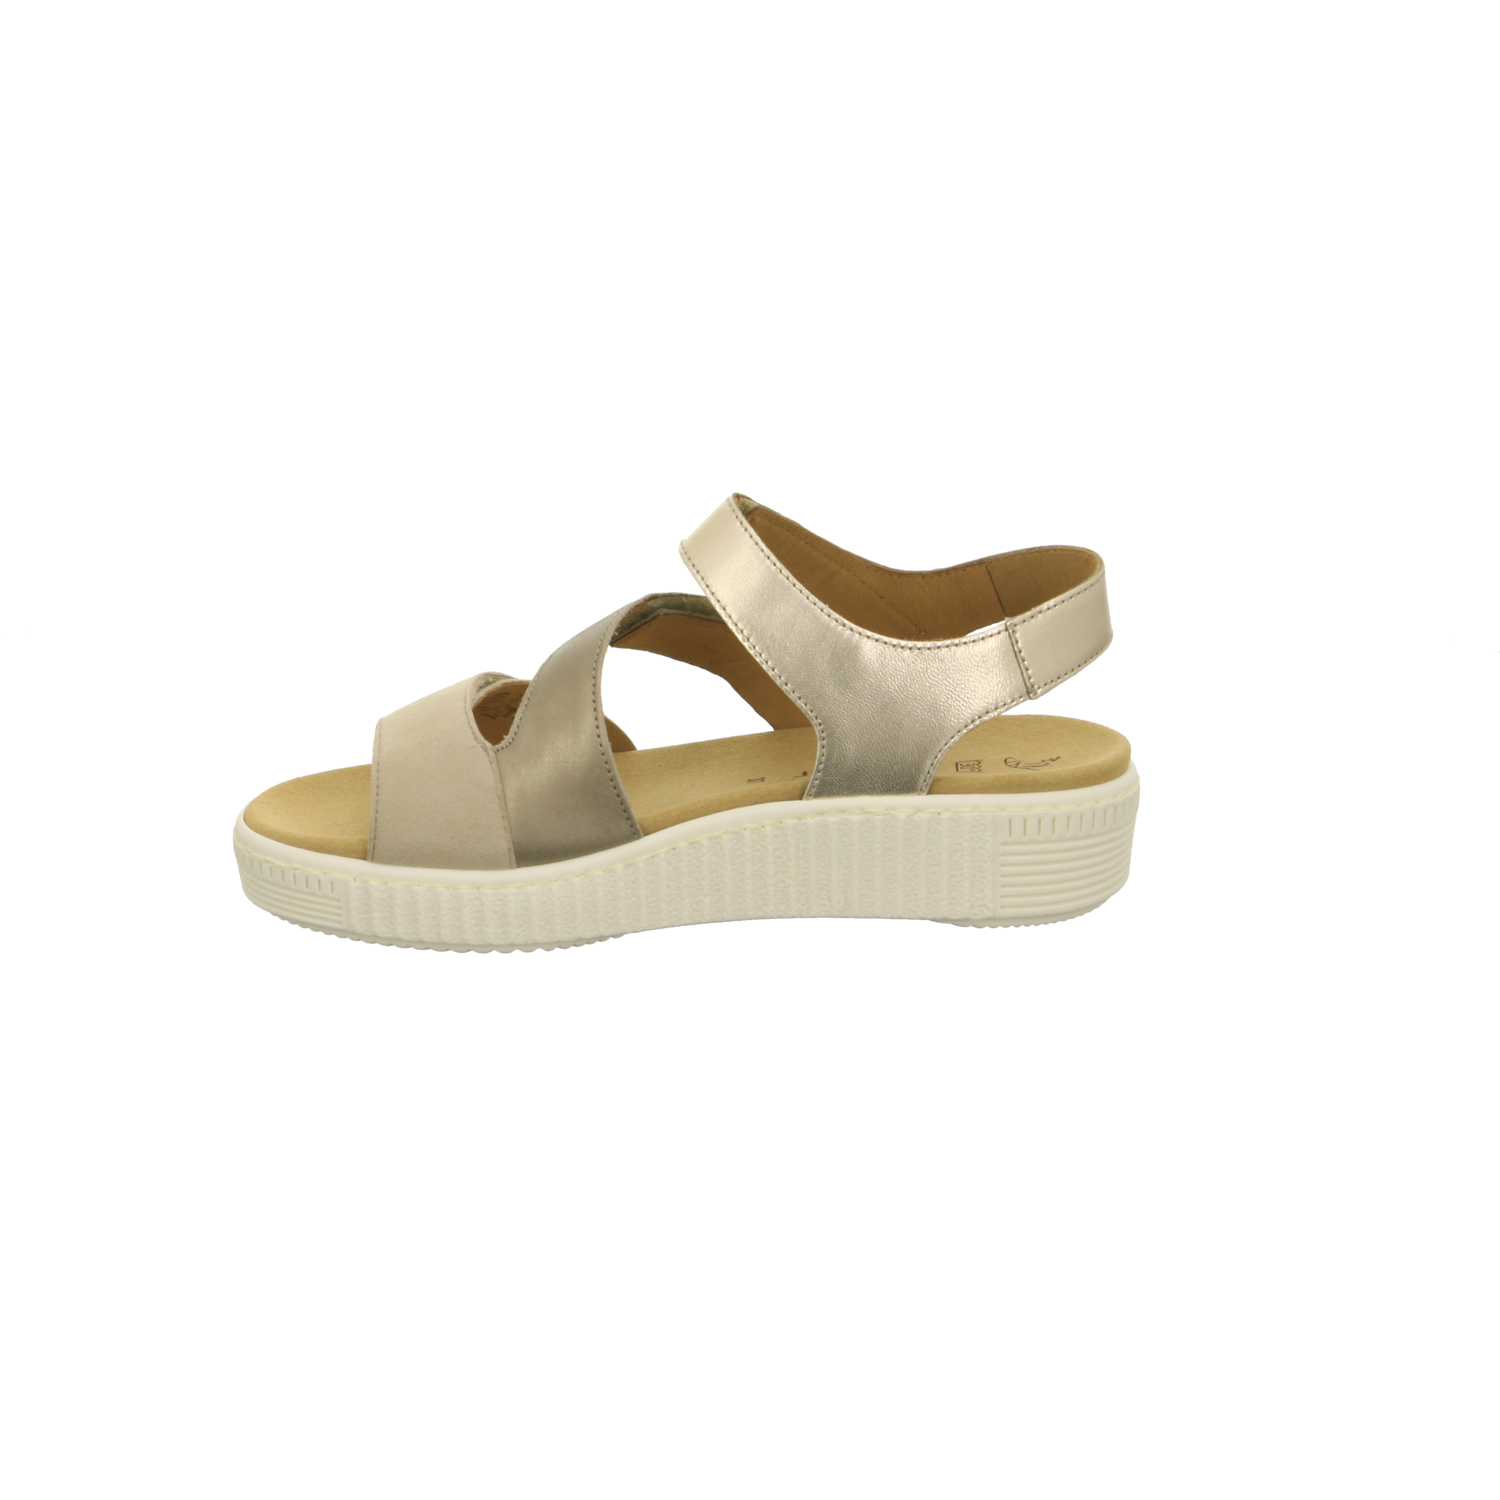 Gabor fashion Sandalette bis 45 mm desert kombi